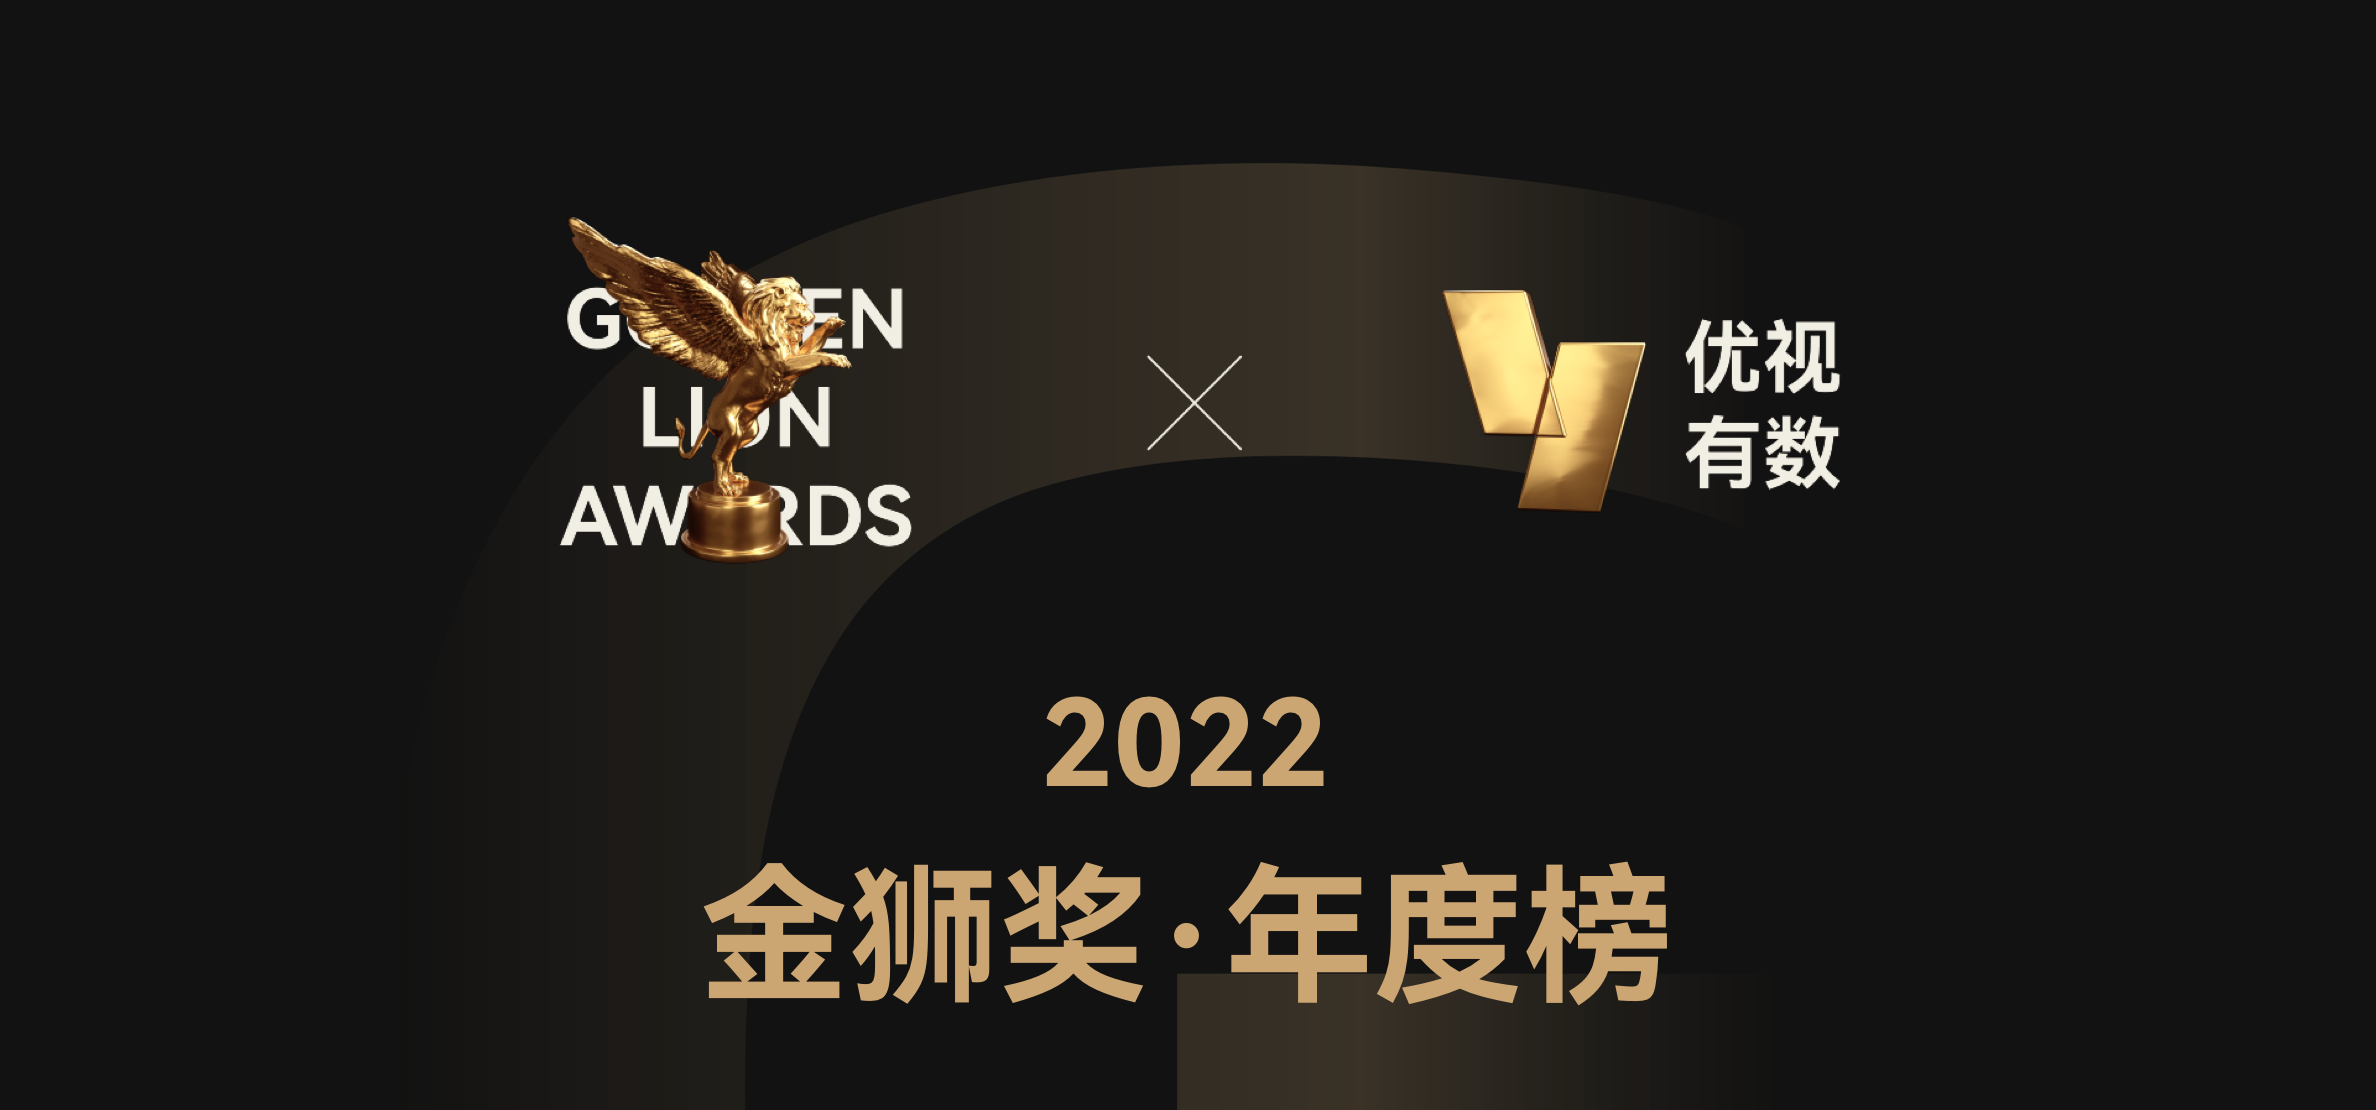 2022金狮奖·年度榜获奖机构名单